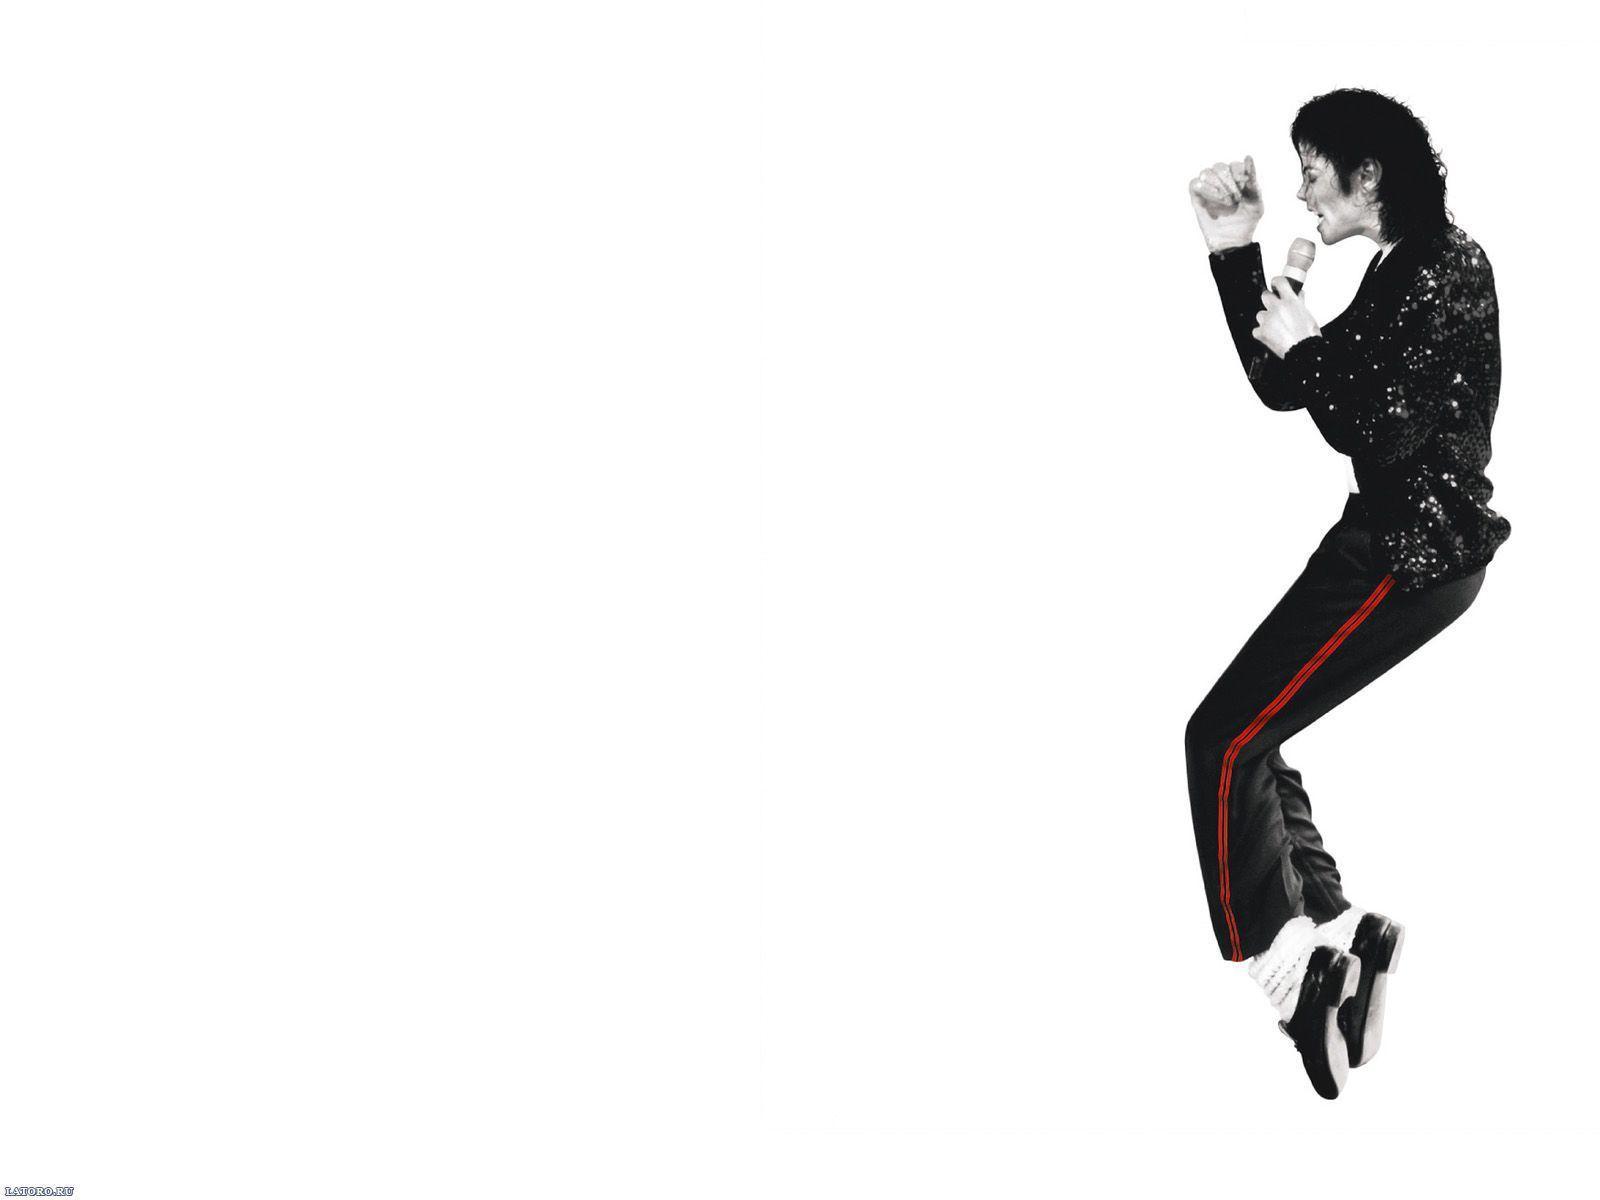 Michael Jackson Desktop Wallpaper FREE on Latoro.com